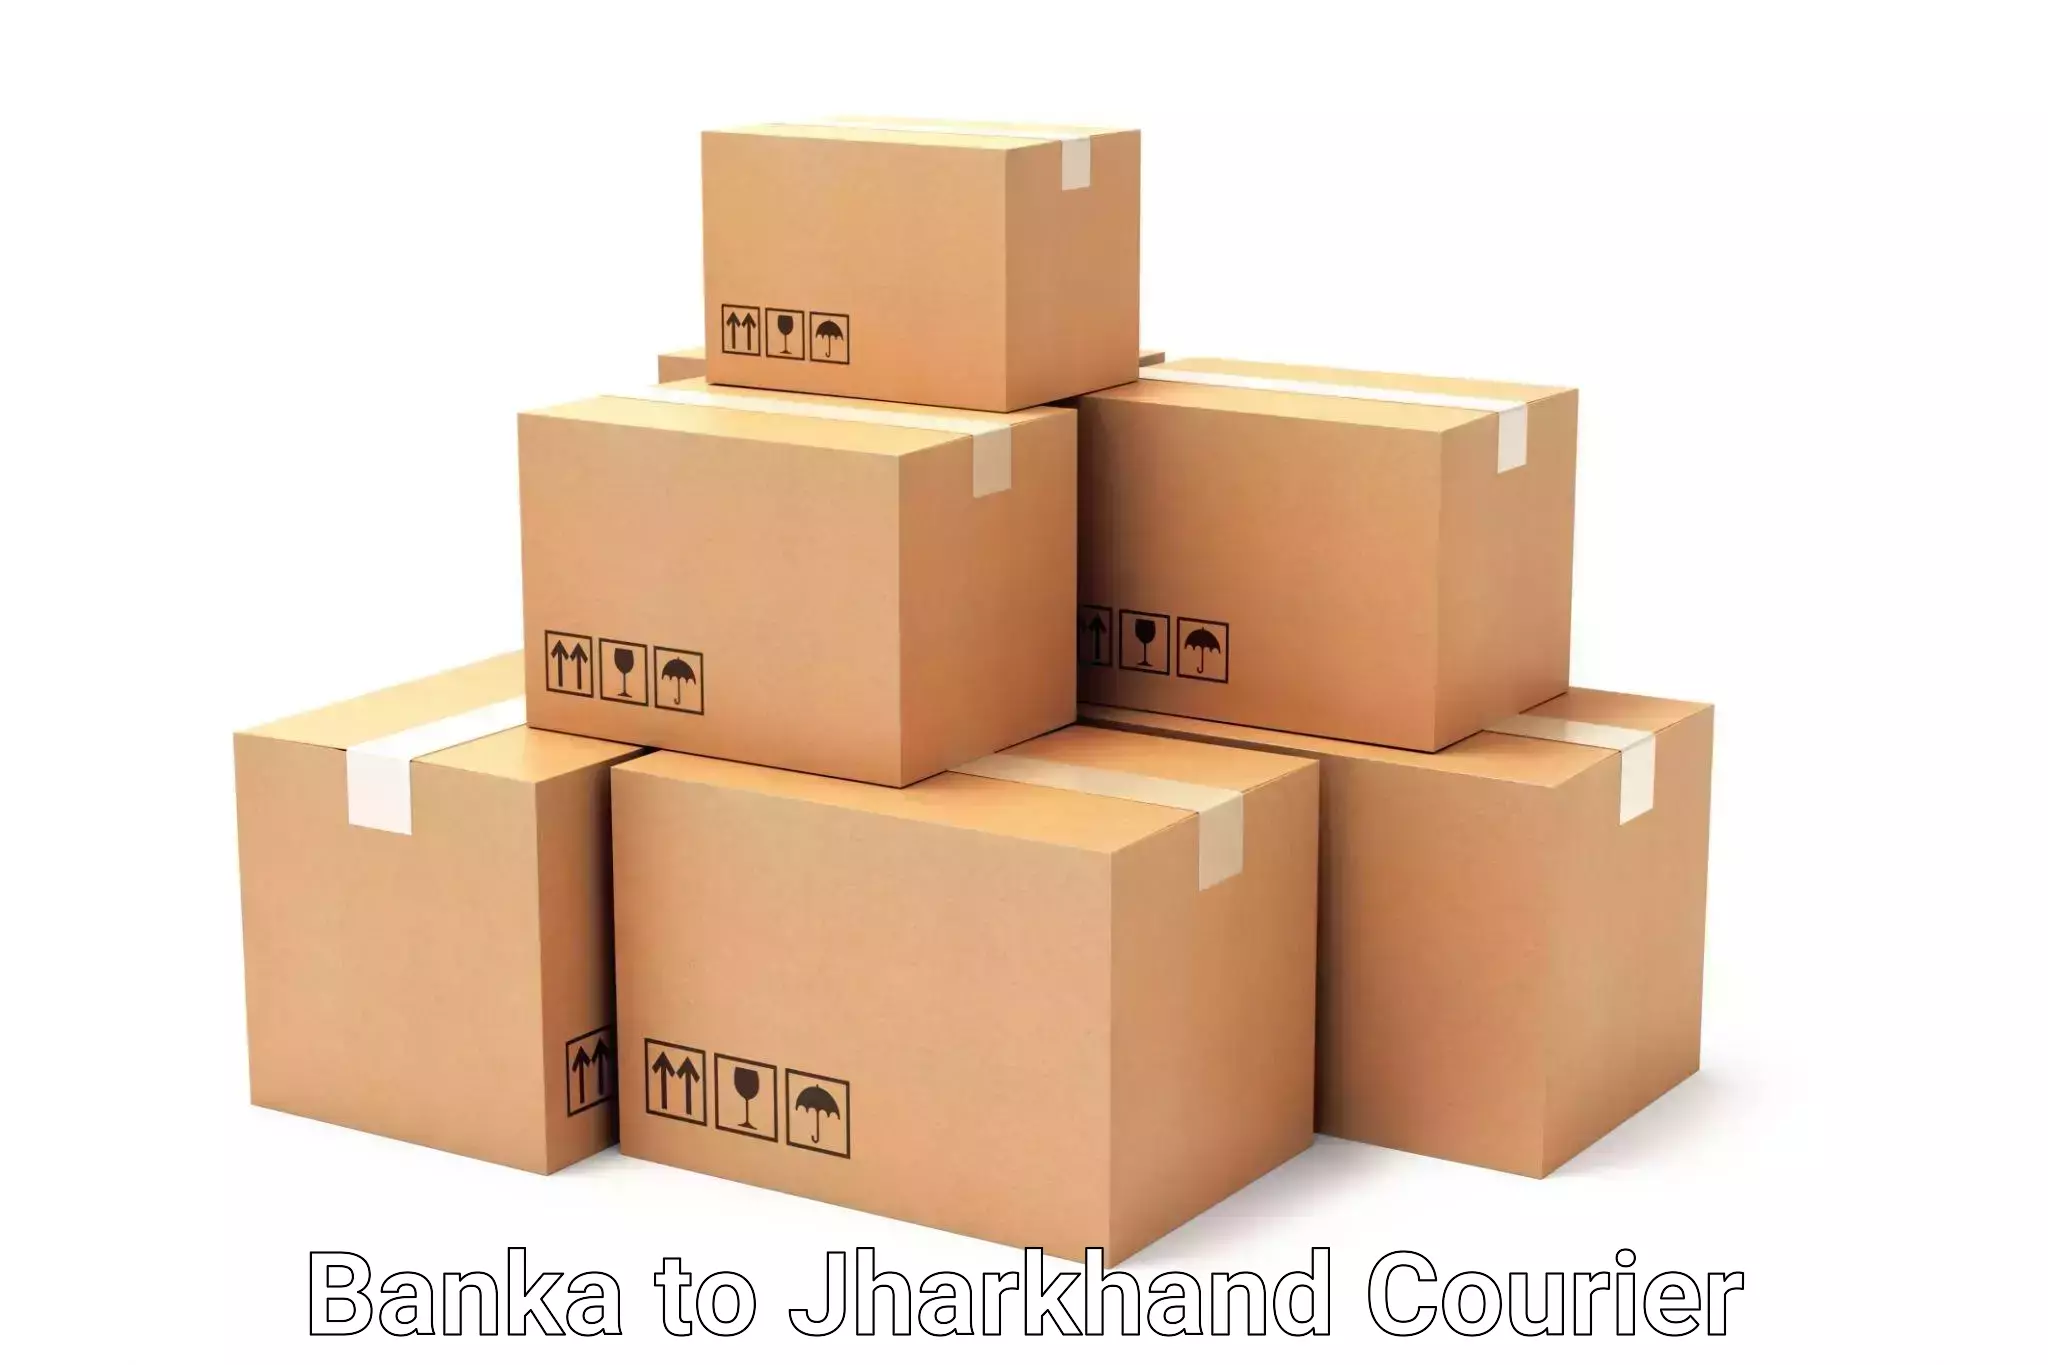 Urgent luggage shipment Banka to Gumia